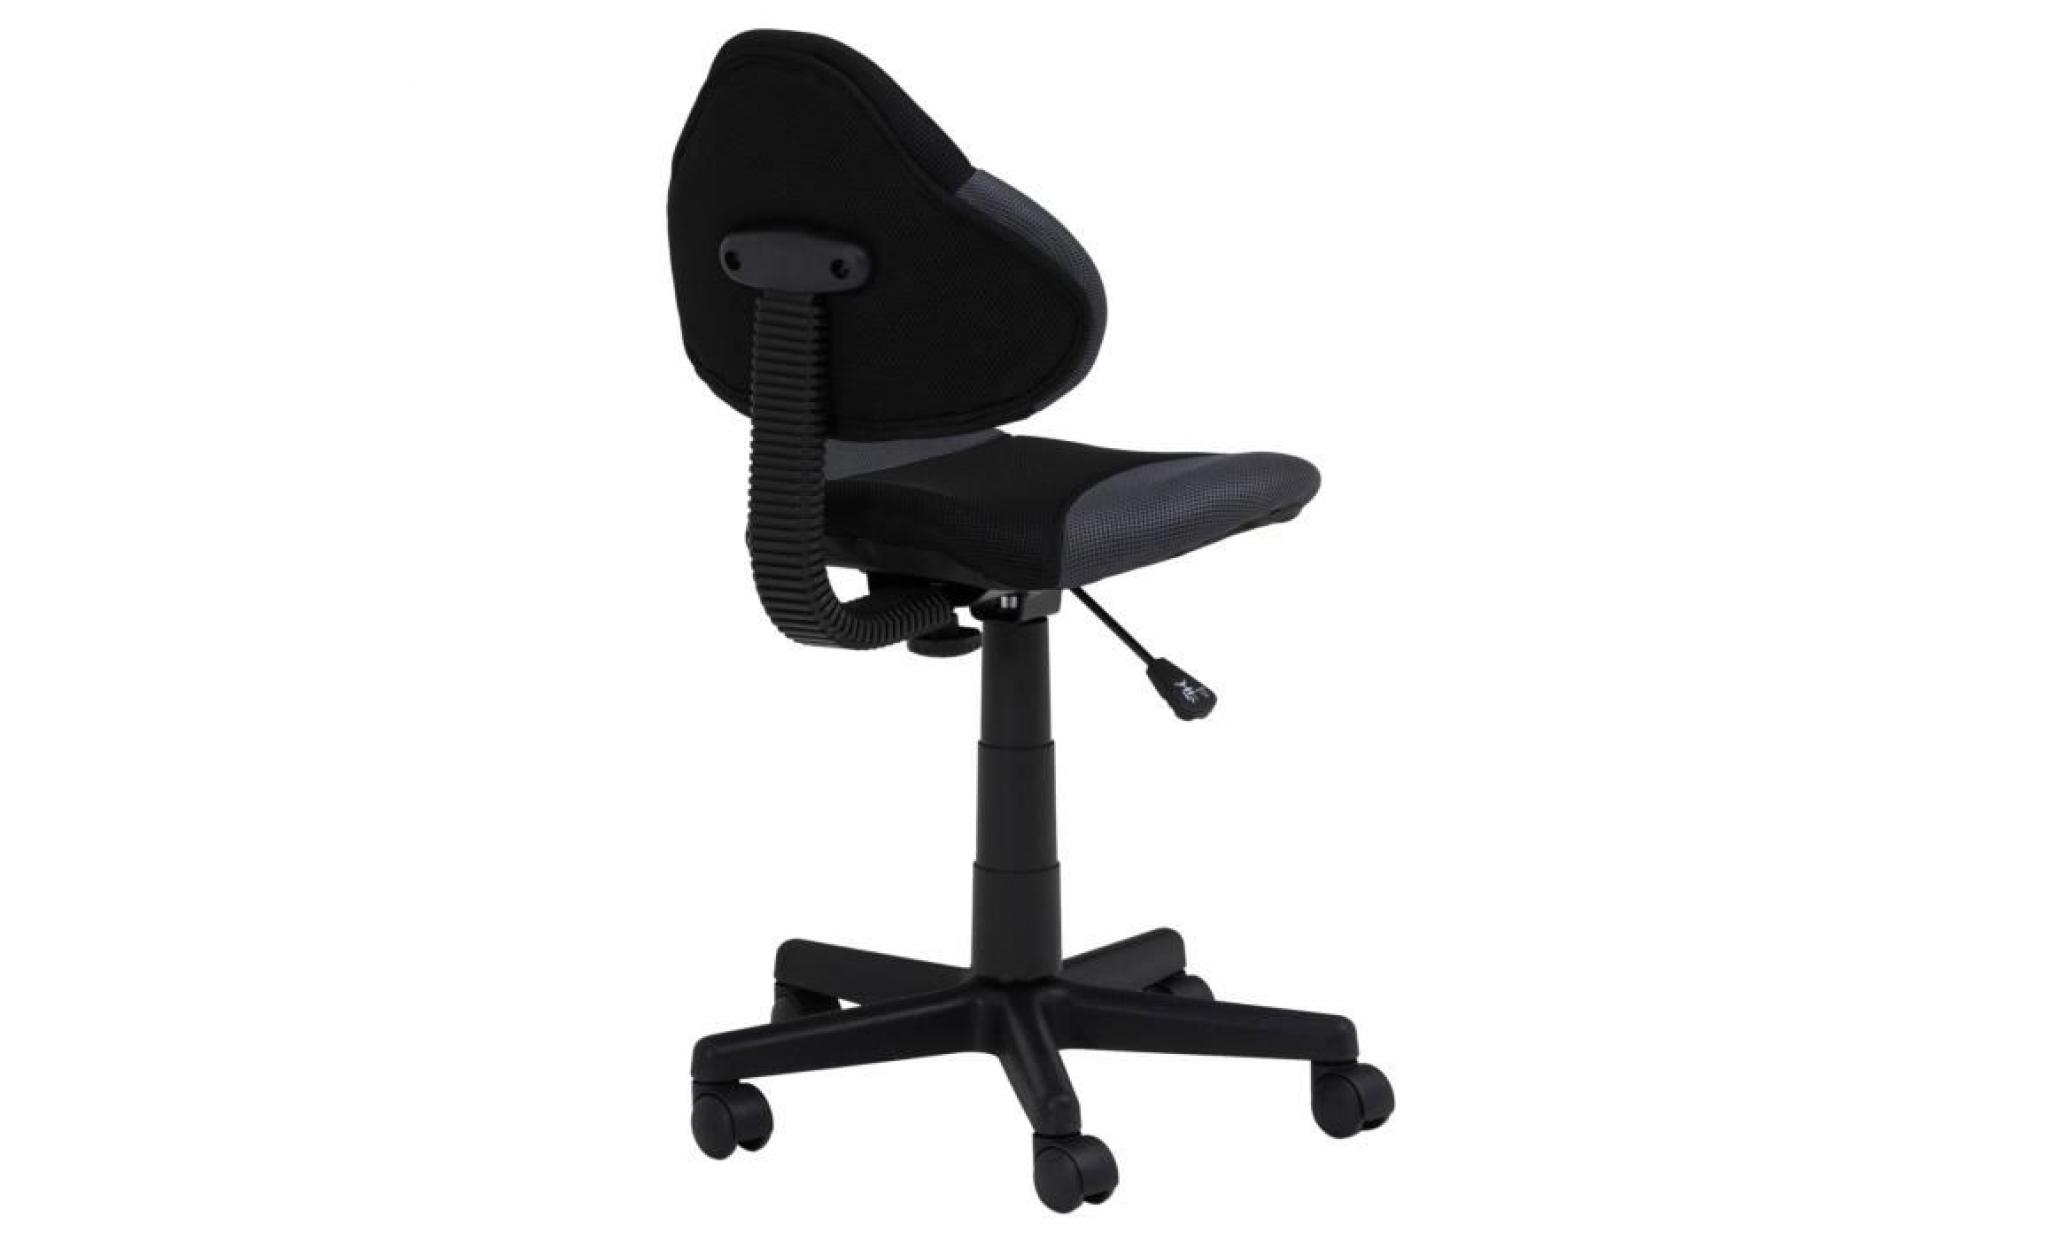 chaise de bureau pour enfant alondra fauteuil pivotant avec hauteur réglable, revêtement en mesh noir/gris pas cher